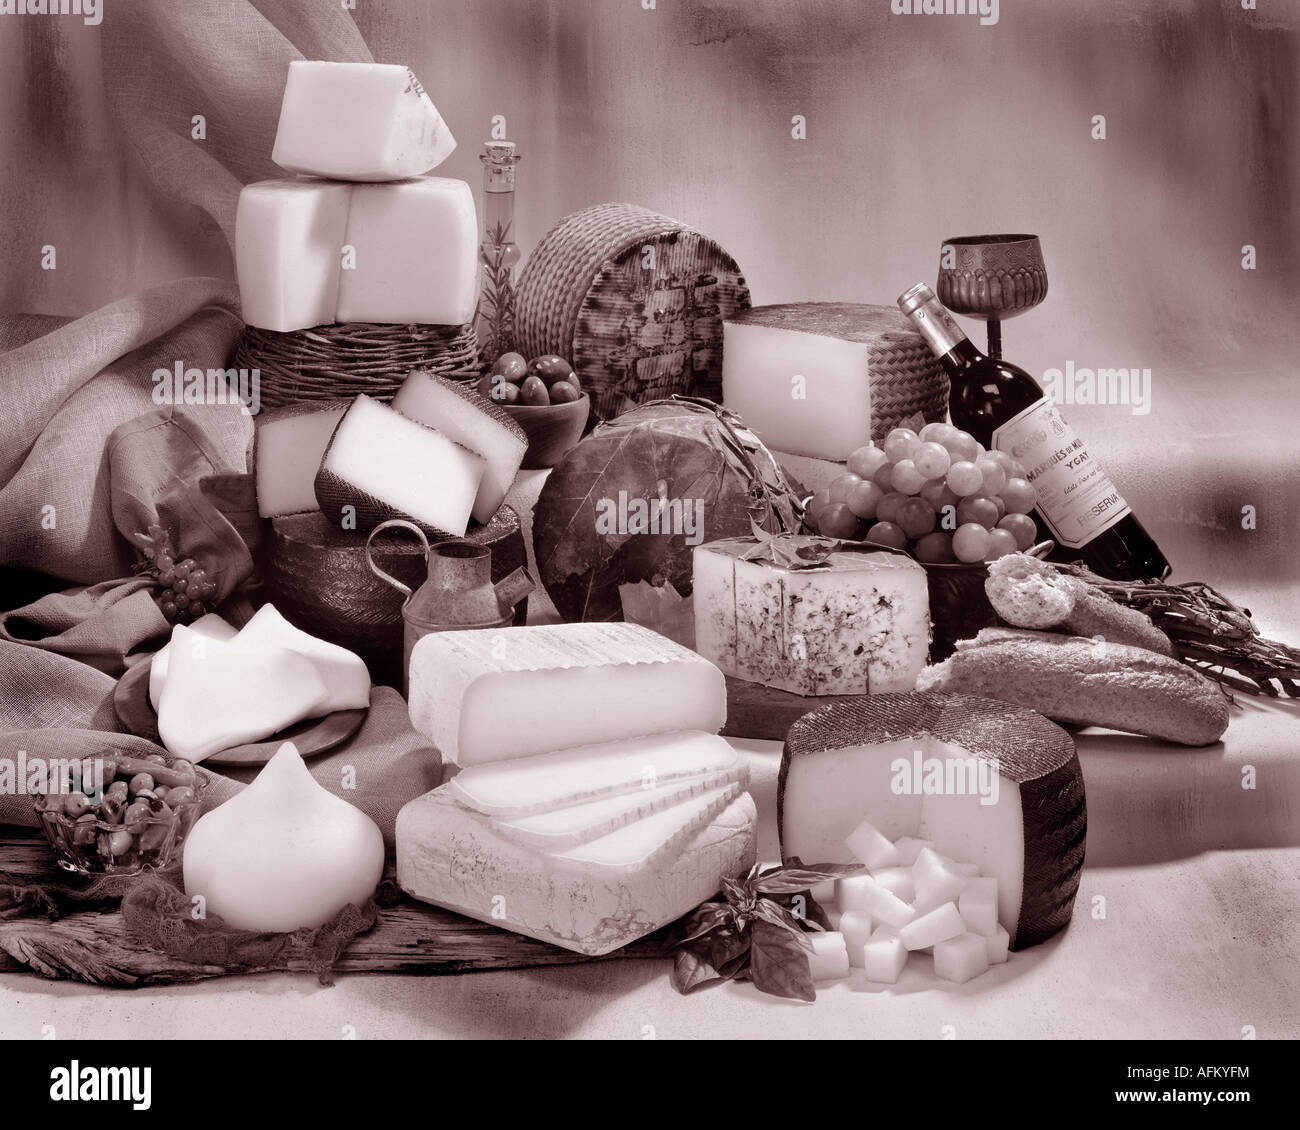 Spanische Käsesorten in Sepia von Gruppenfoto auf getönten gesprenkelte Hintergrund. Querformat, Studio Tischplatte. Klassisches Bild. Stockfoto